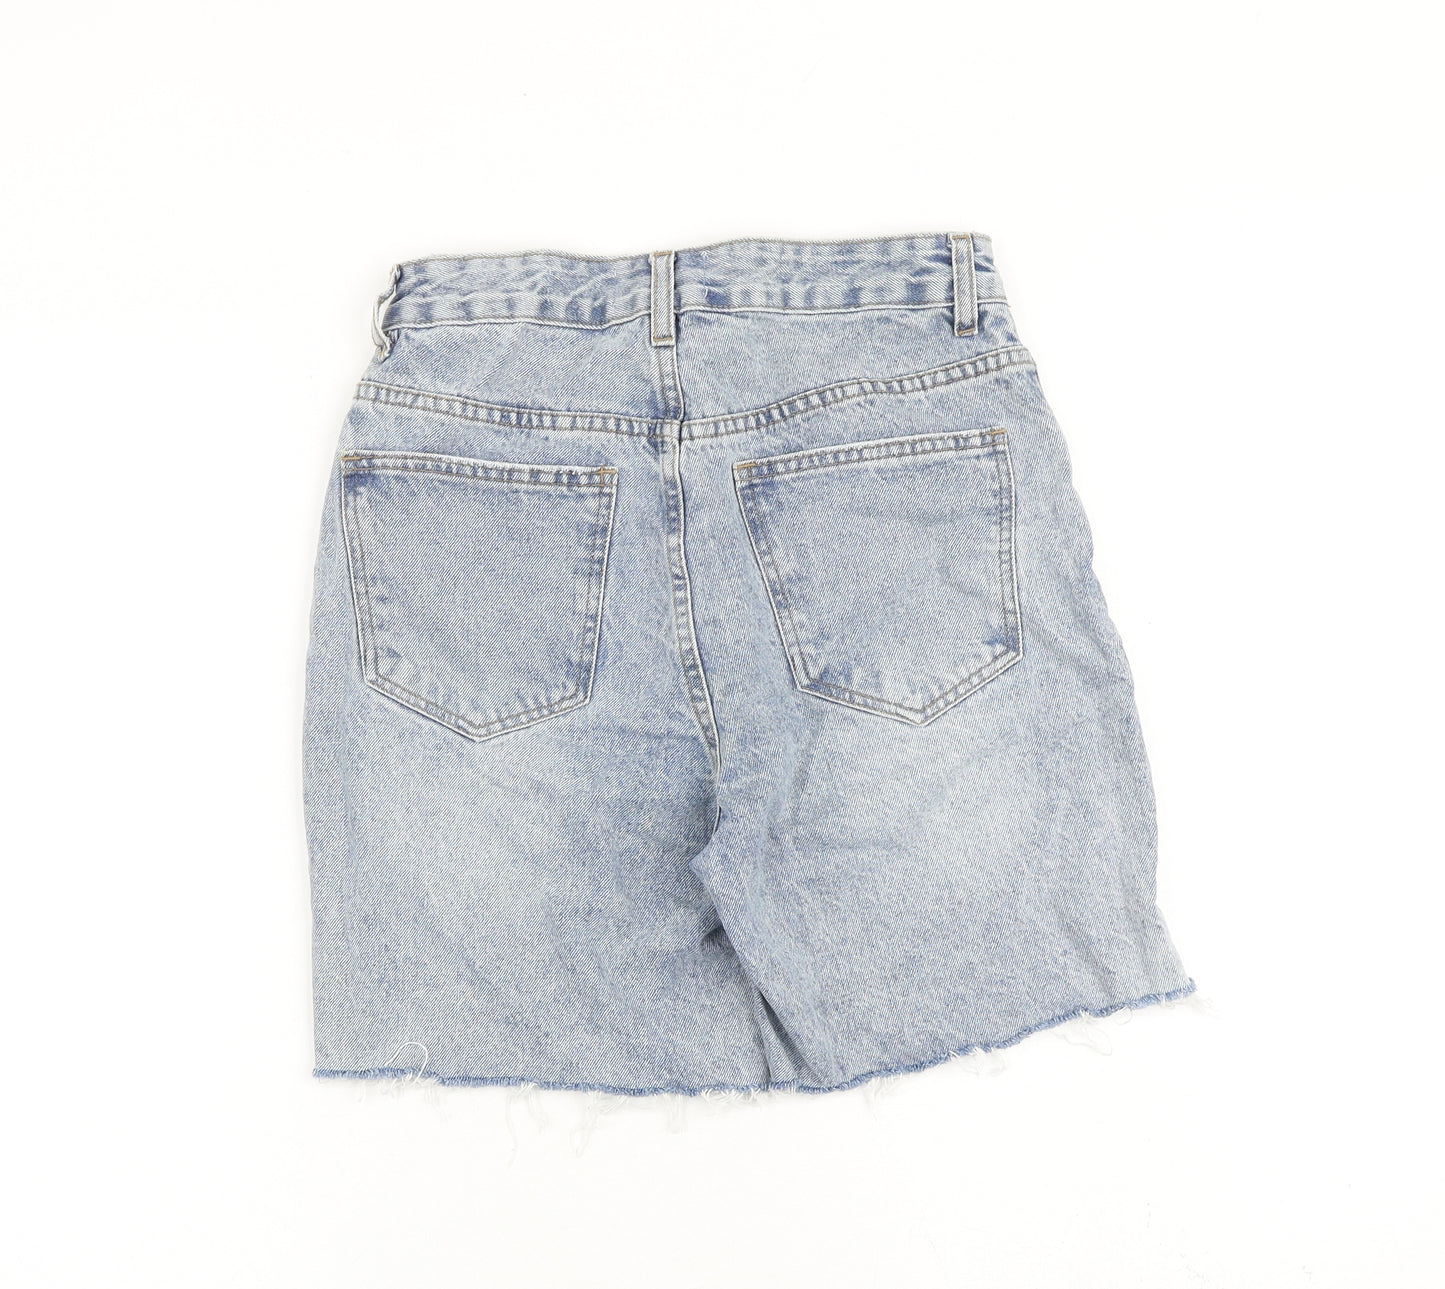 Cotton On Womens Blue 100% Cotton Boyfriend Shorts Size 8 L6 in Regular Zip